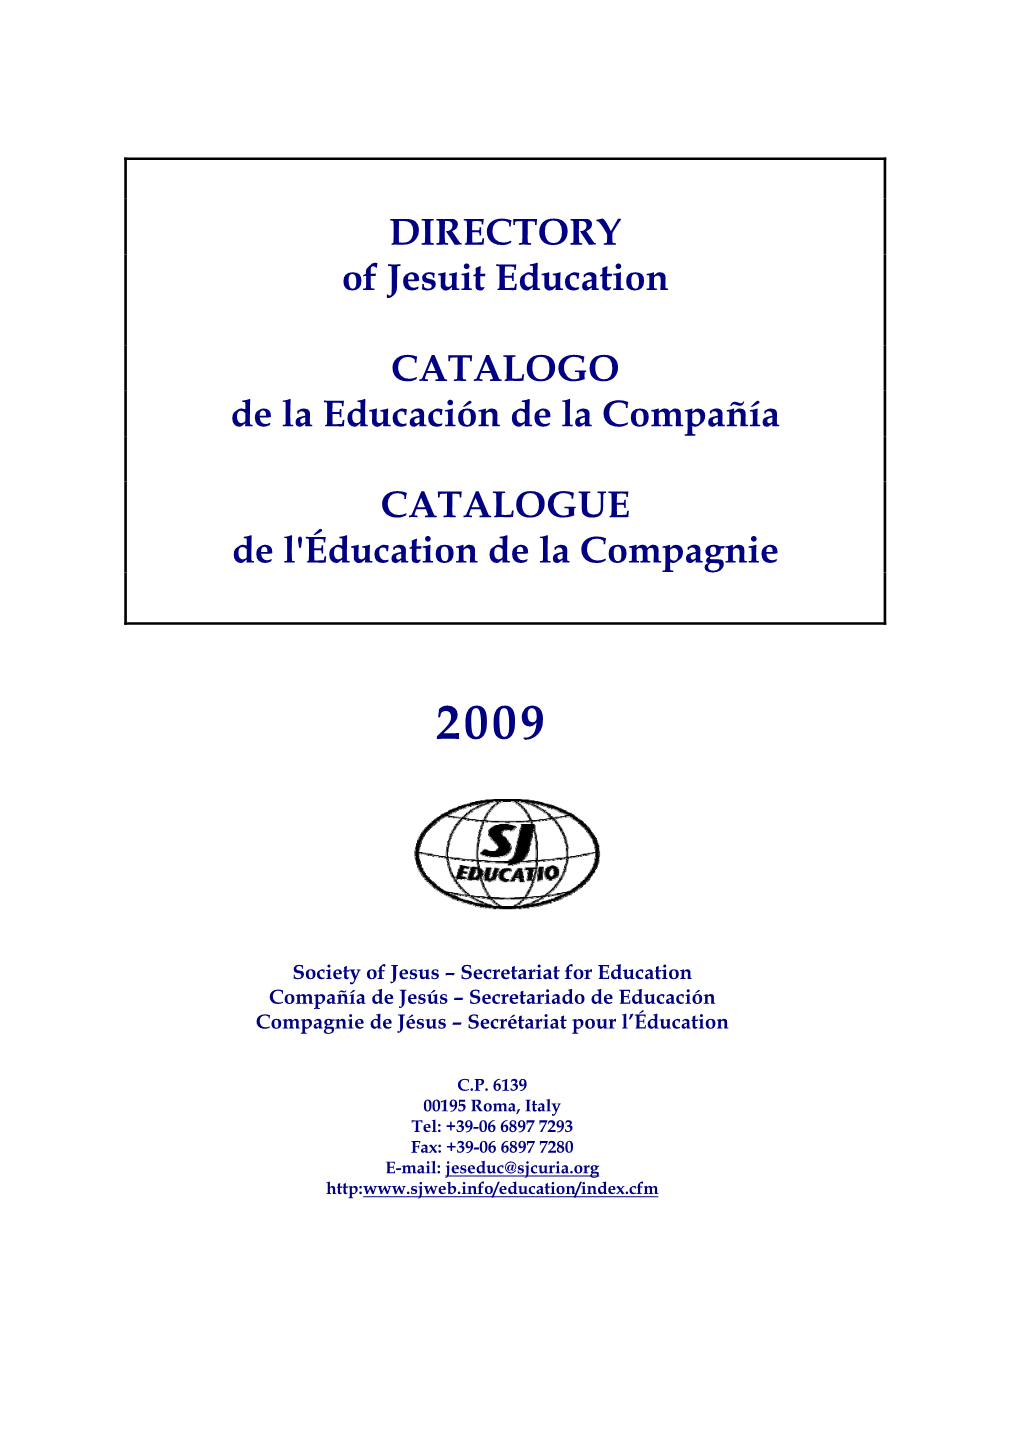 DIRECTORY of Jesuit Education CATALOGO De La Educación De La